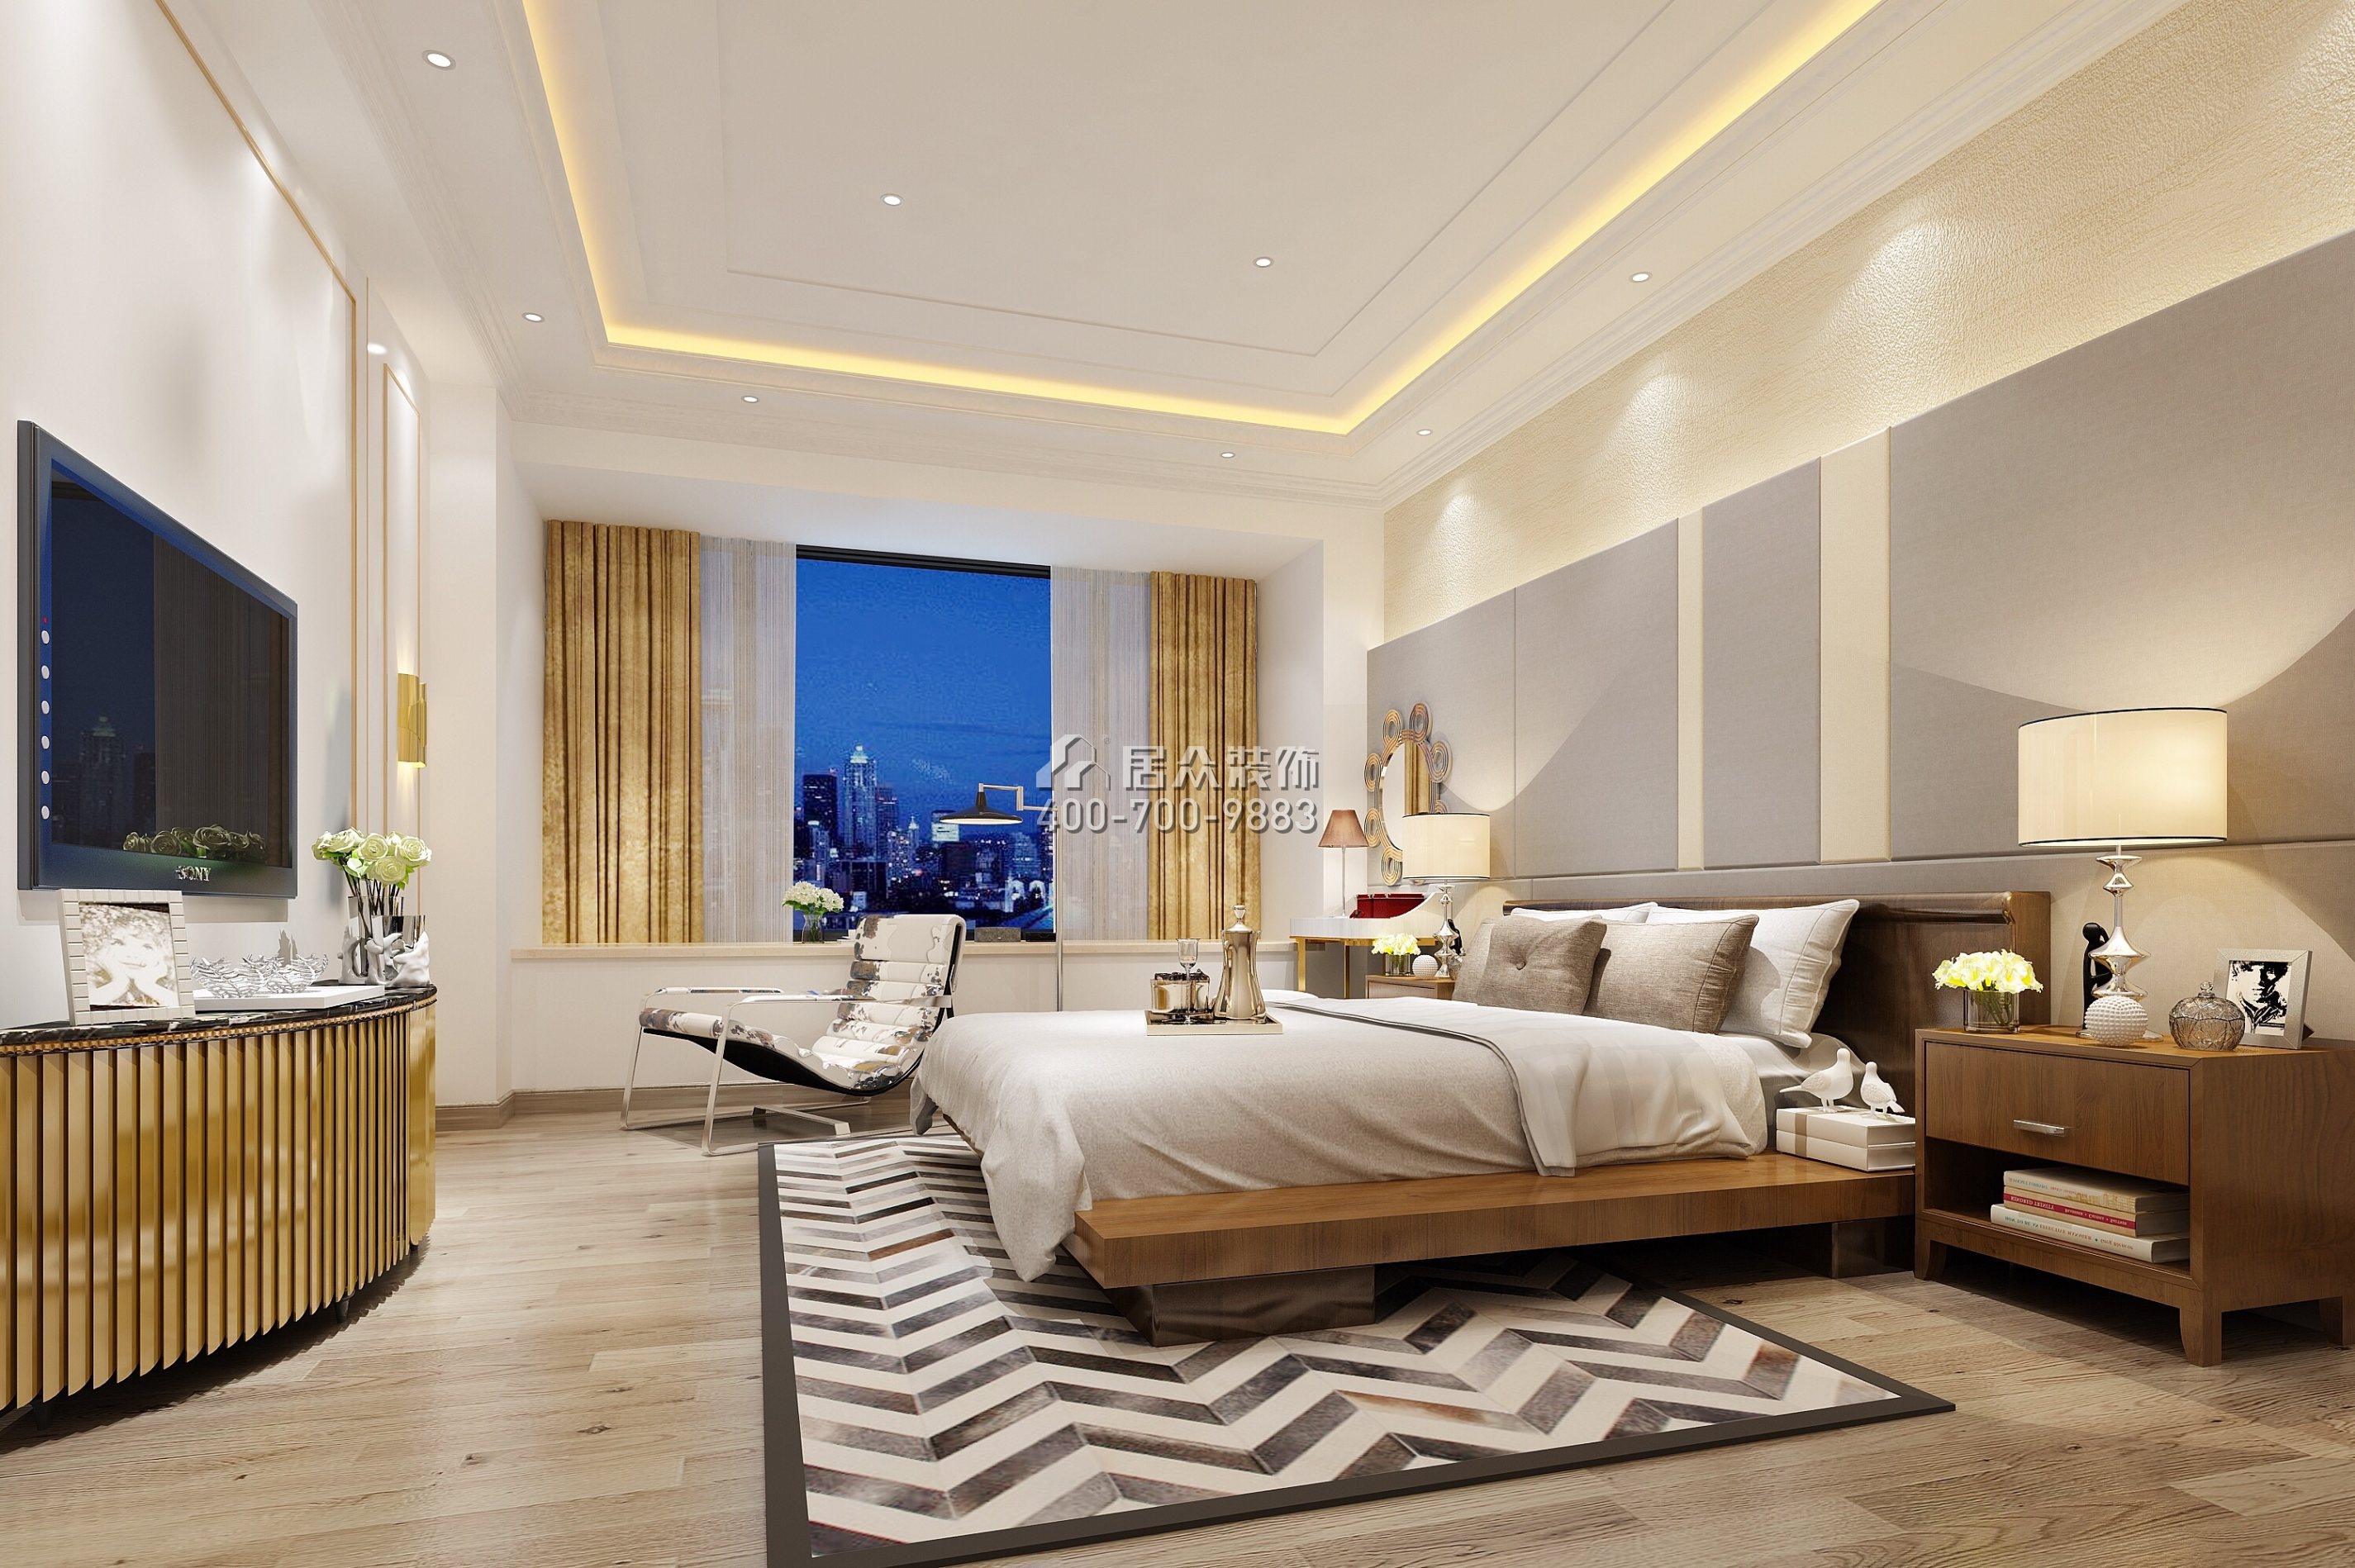 汉森吉祥龙260平方米现代简约风格平层户型卧室装修效果图